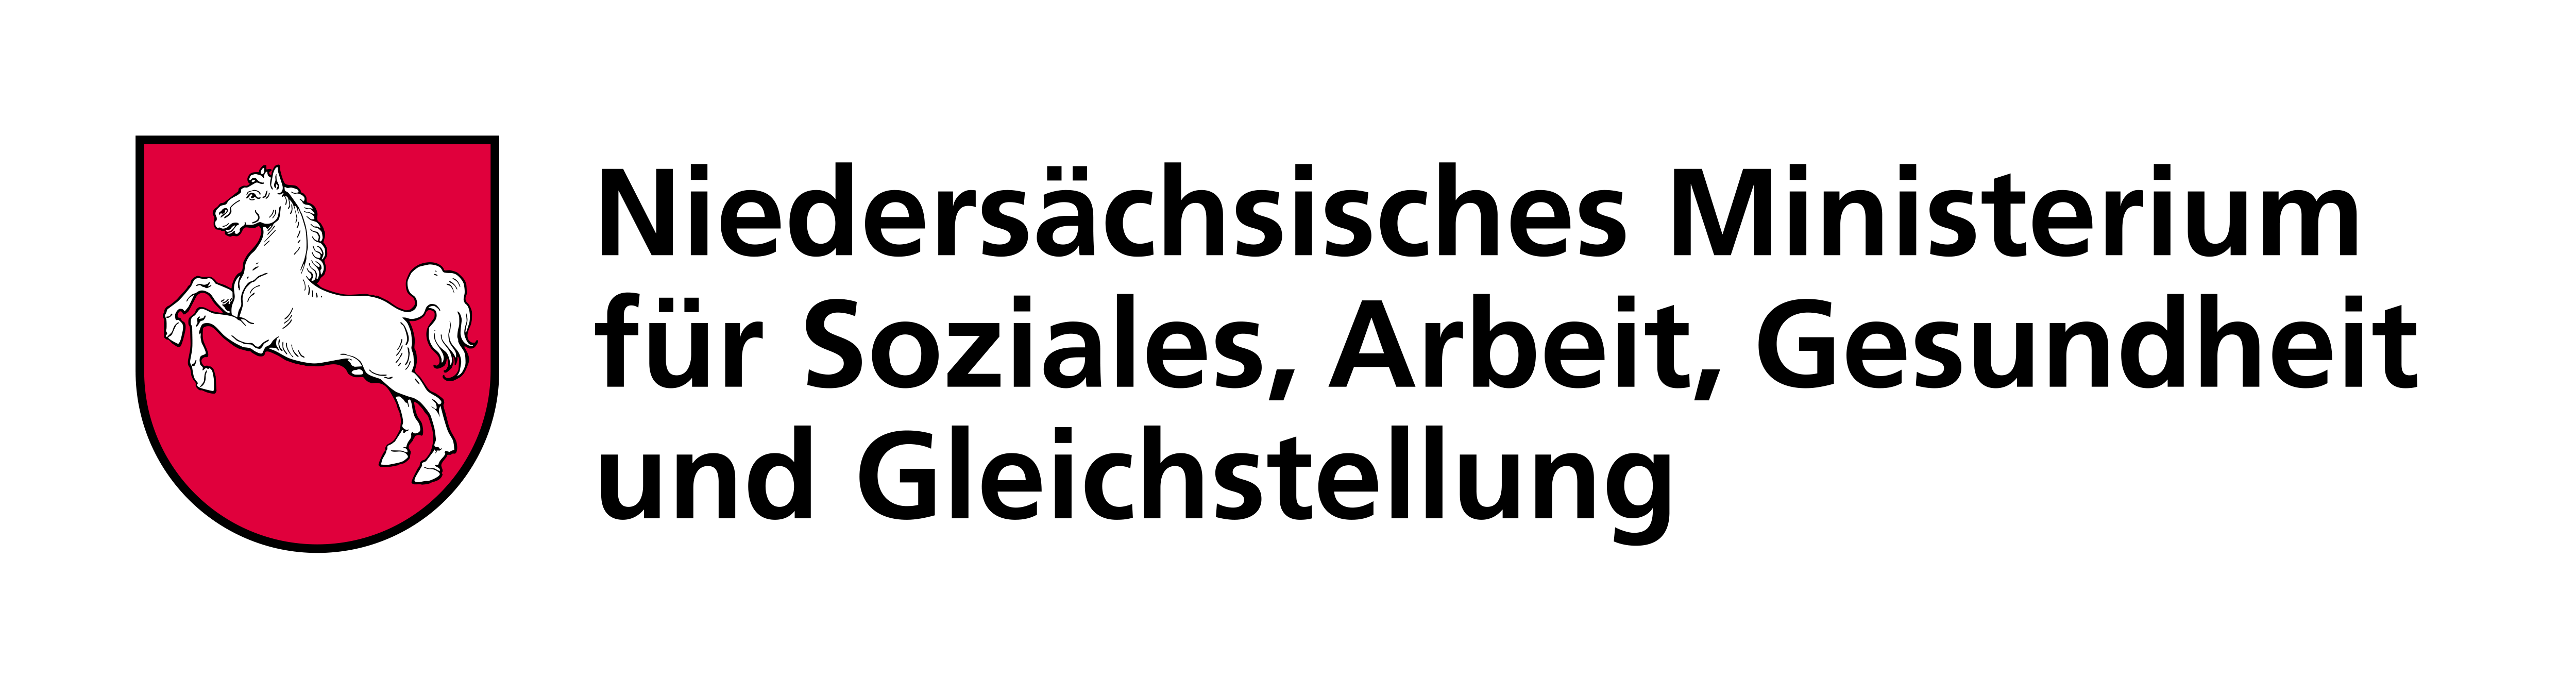 Logo des Niedersächsisches Ministerium für Soziales, Arbeit, Gesundheit und Gleichstellung